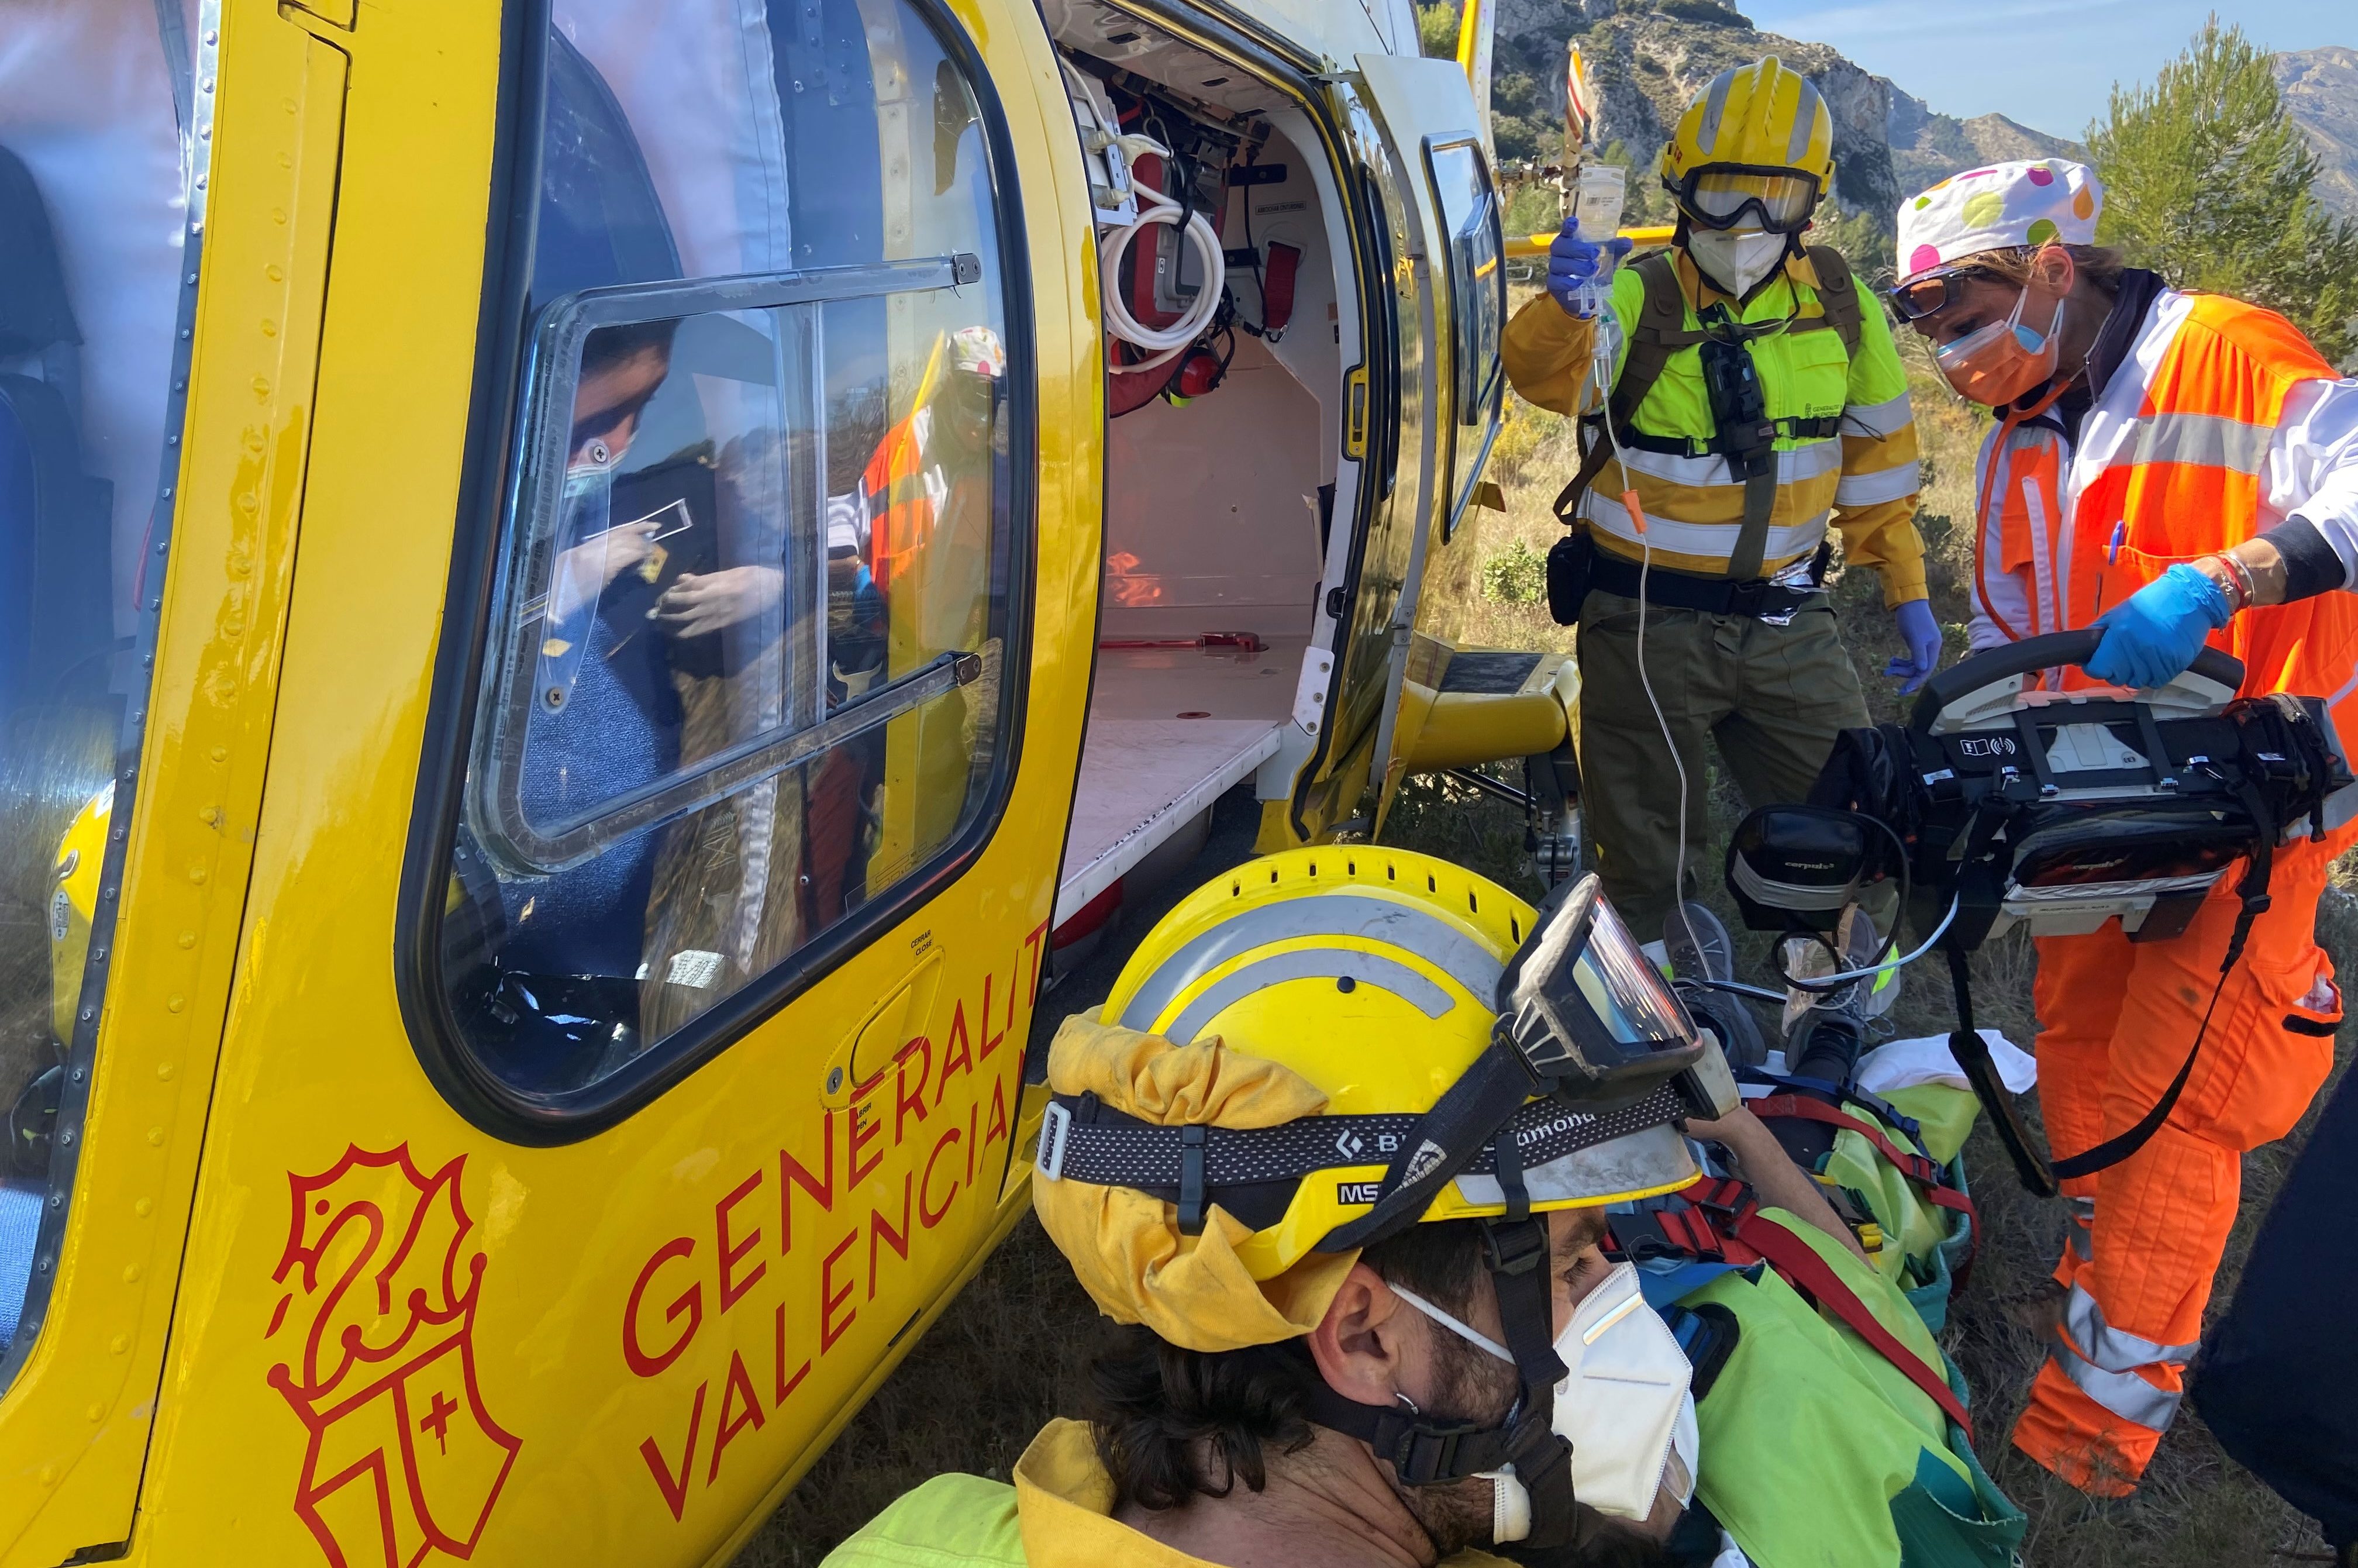 Emergències coordina 149 rescats en helicòpter a València i Castelló durant 2021